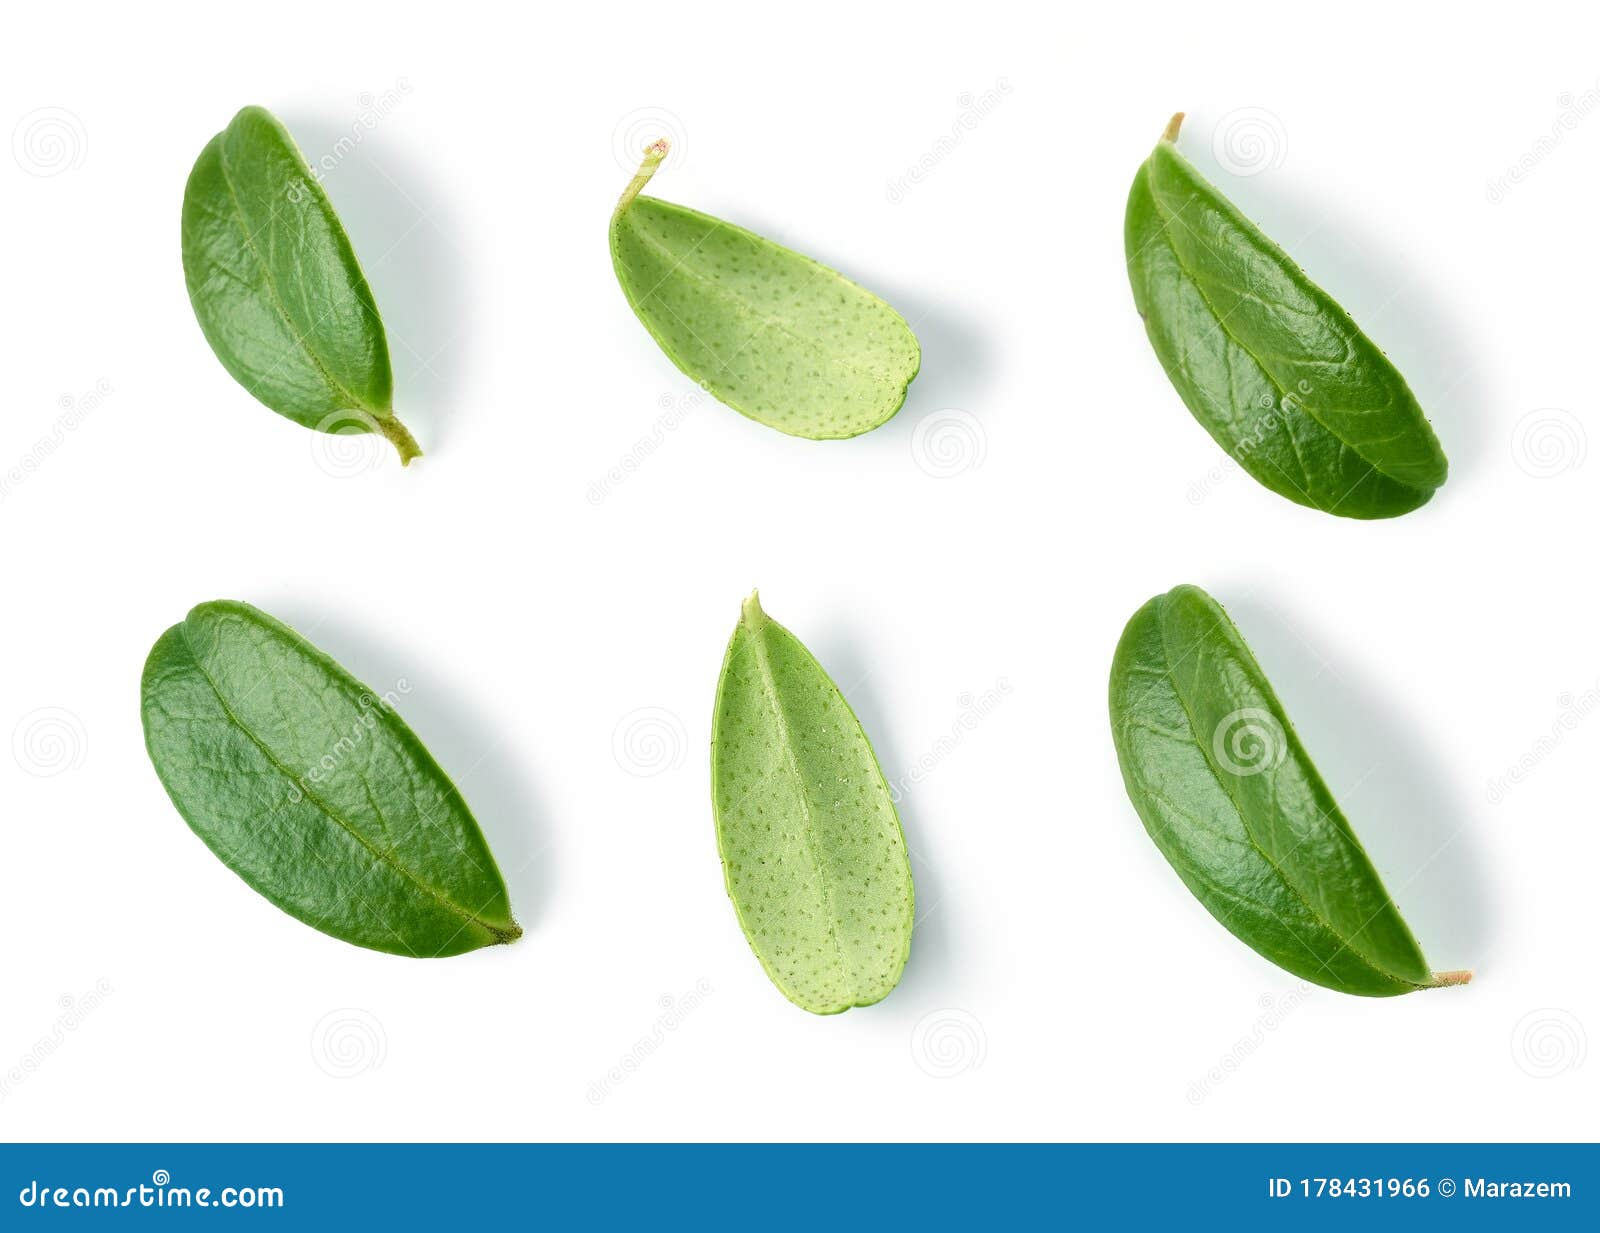 fresh green lingonberry leaves